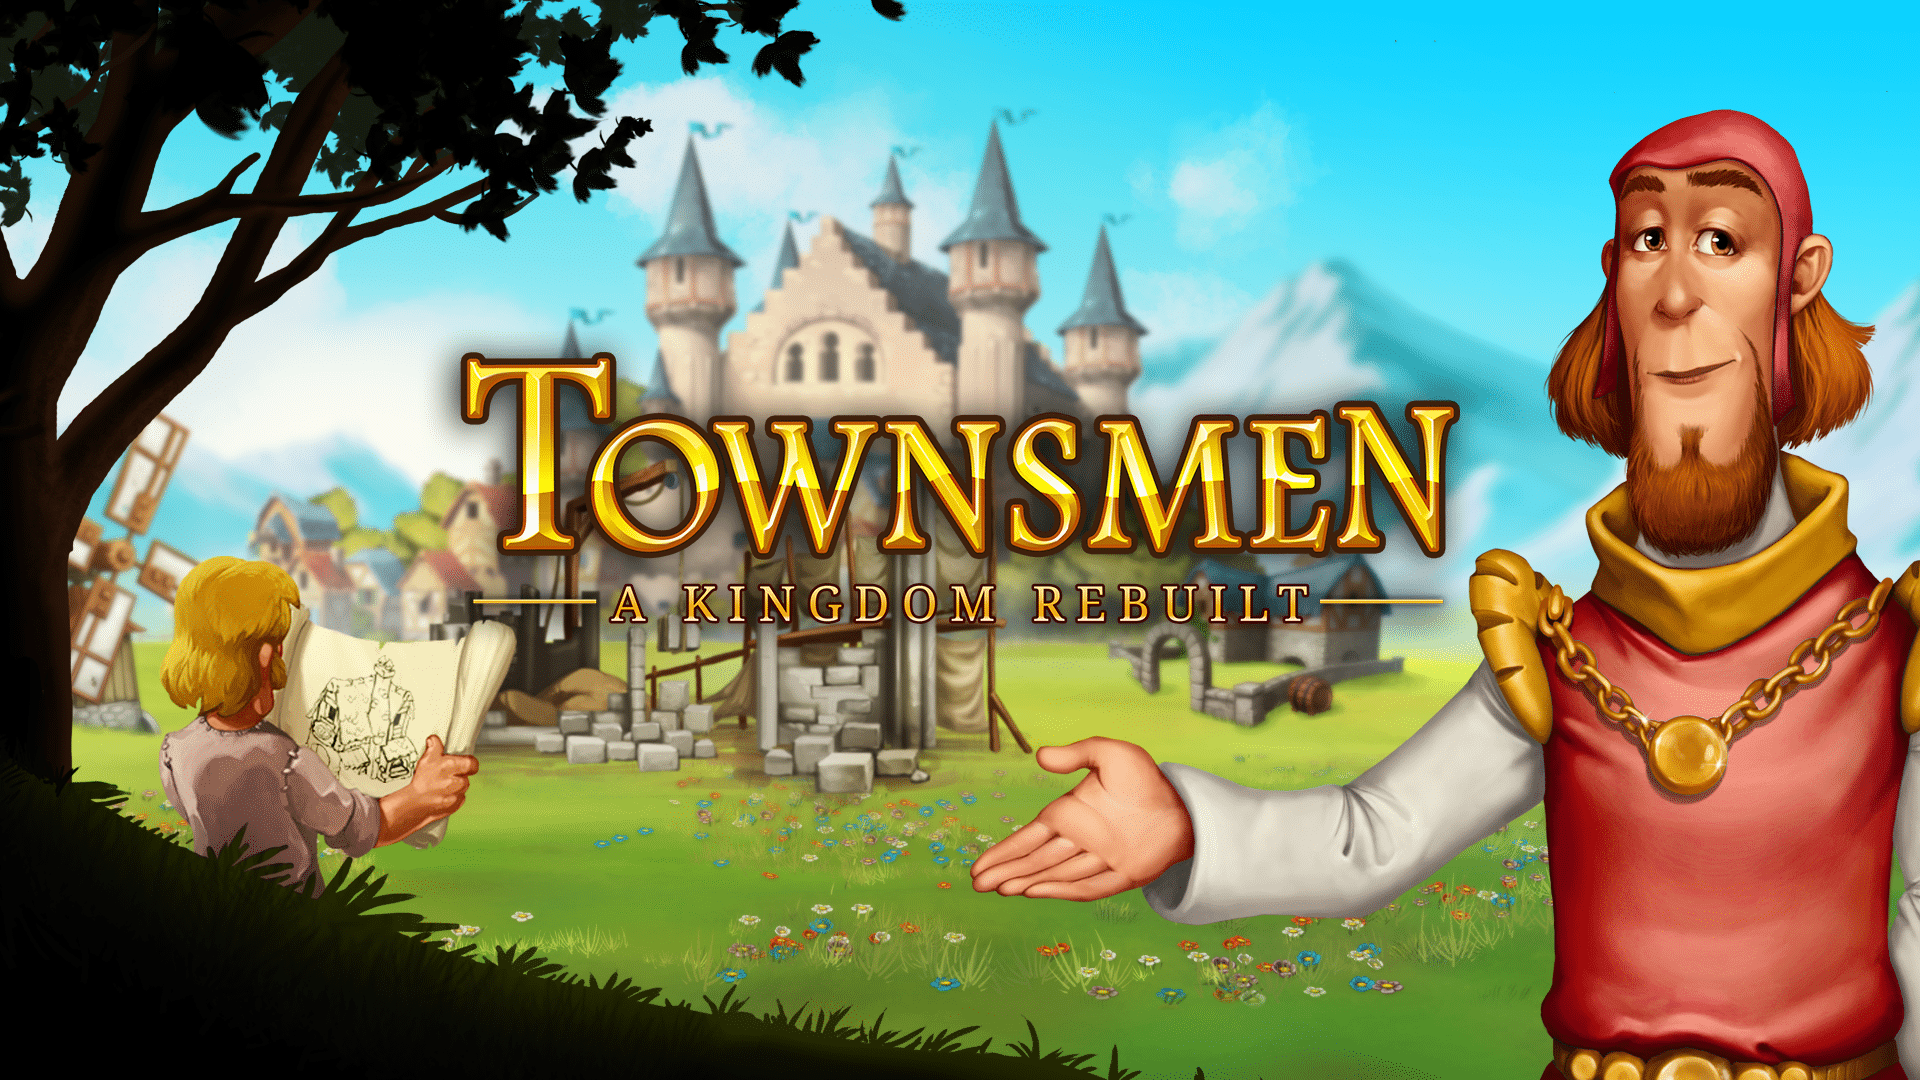 townsmen a kingdom rebuilt